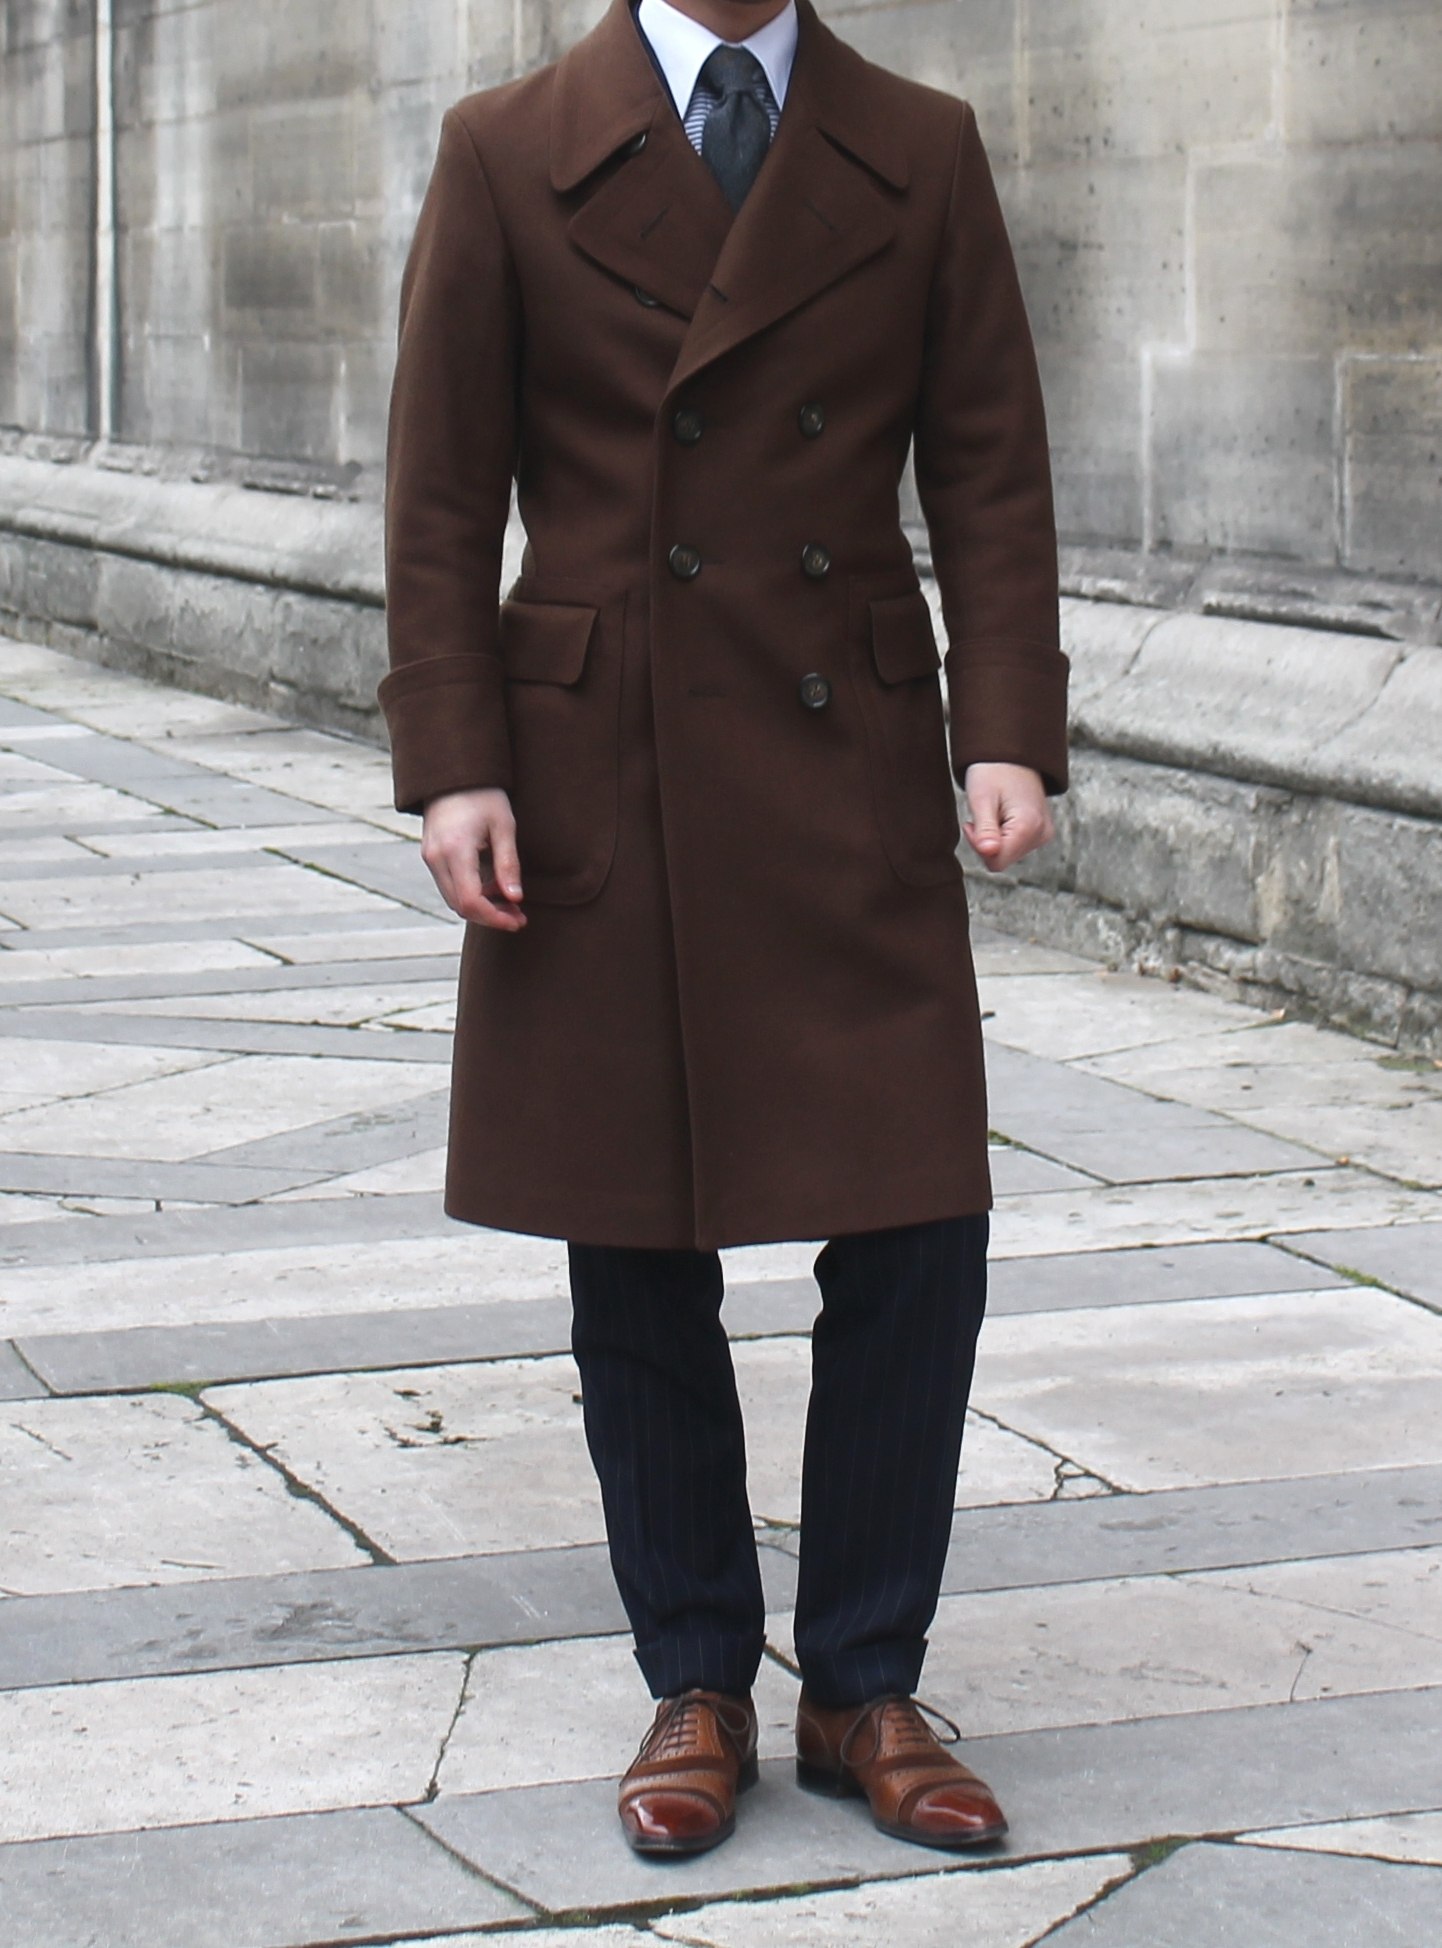 Мужское пальто ниже колена. Кор чневое мужское пвльто. Коричневое пальто мужское. Классическое пальто мужское. Темно коричневое пальто мужское.